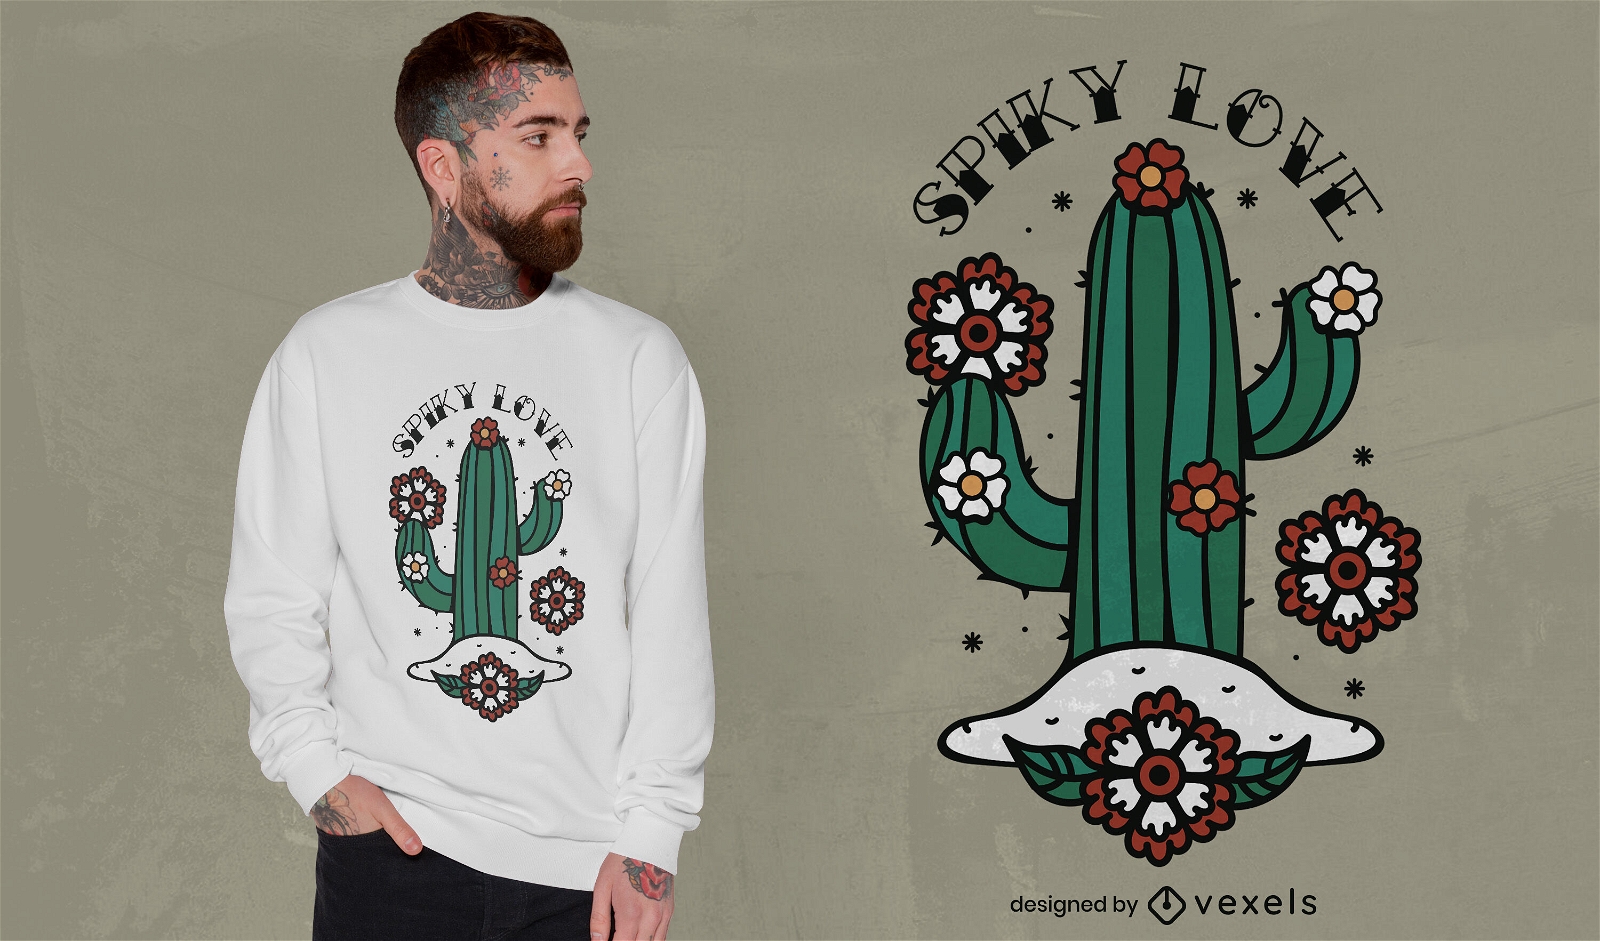 Stacheliges Liebes-Kaktus-T-Shirt-Design